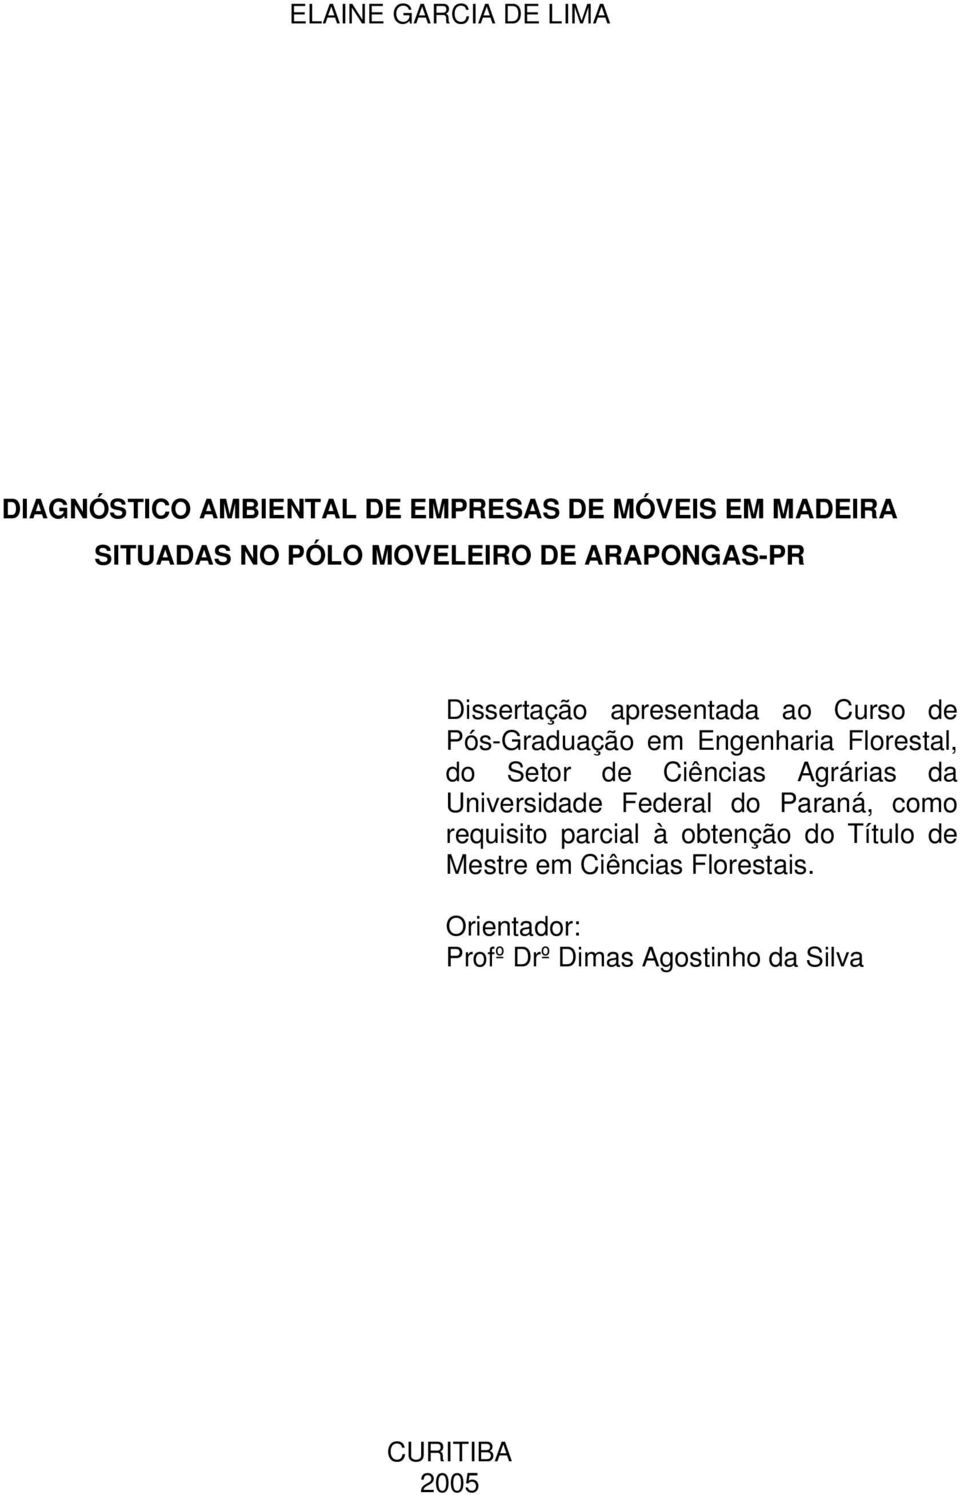 Florestal, do Setor de Ciências Agrárias da Universidade Federal do Paraná, como requisito parcial